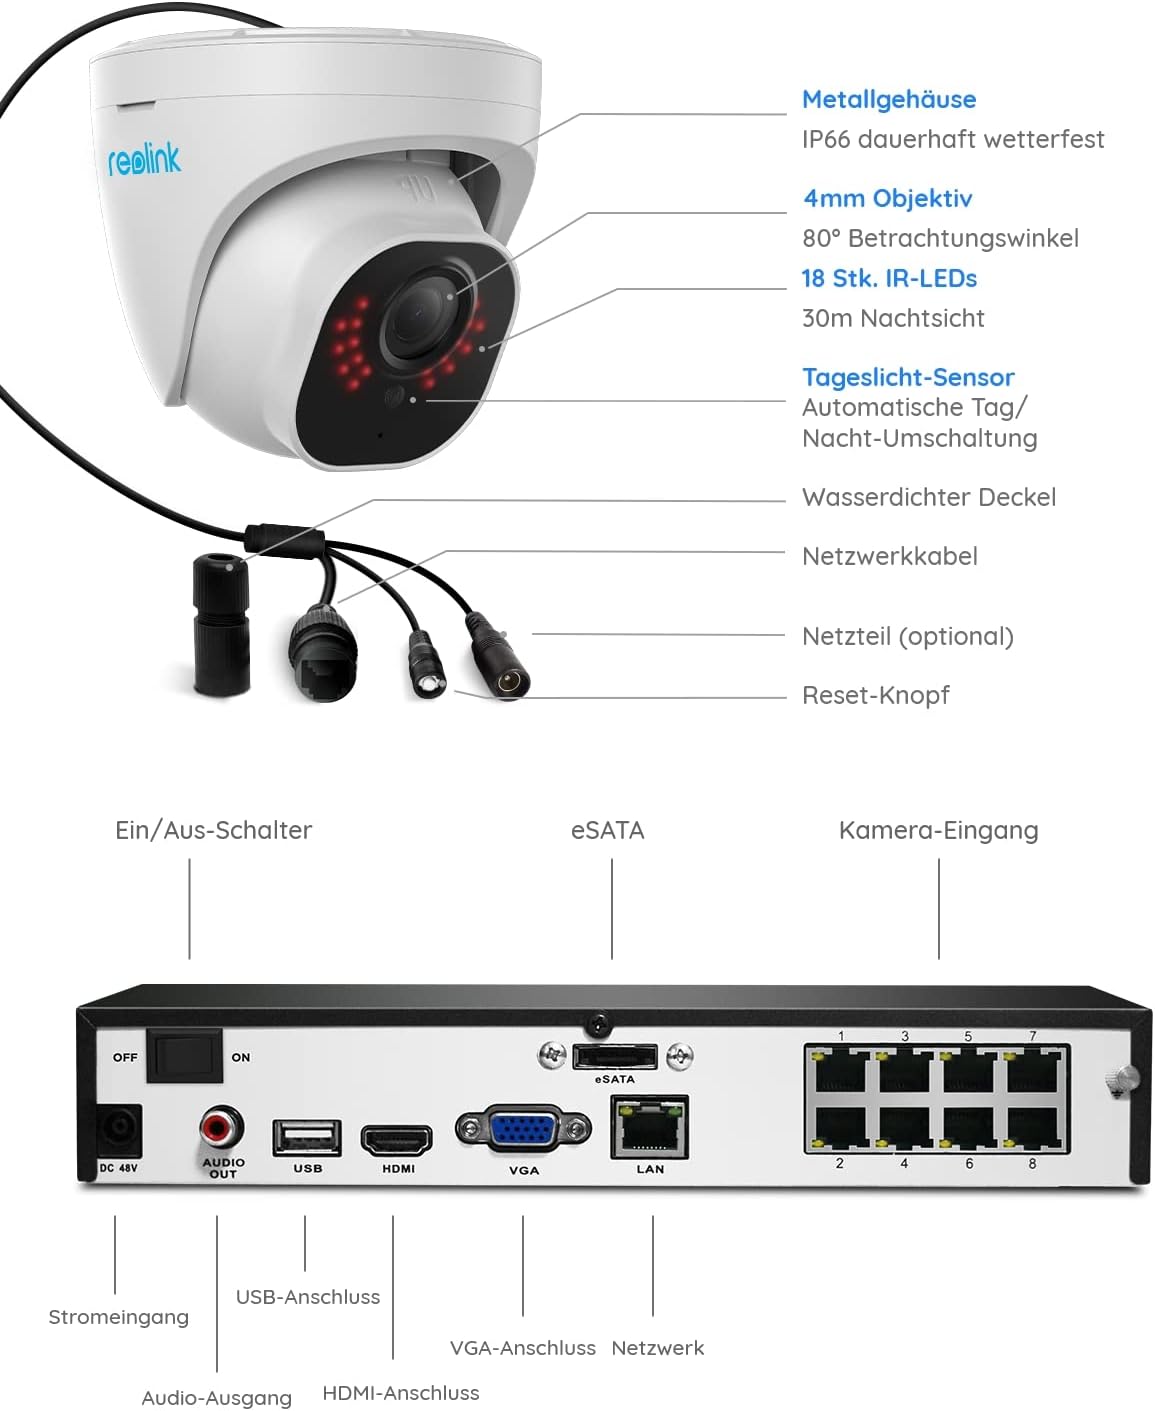 Komplet zunanjih nadzornih kamer Reolink s 5 MP: vključuje 4 x 5 MP PoE IP kupolaste kamere za zunanji nadzor, skupaj z 8-kanalnim 2TB HDD NVR za neprekinjen 24/7 video nadzor. Vsebuje zvočno snemanje, zaznavanje gibanja, nočni vid in identifikacijo